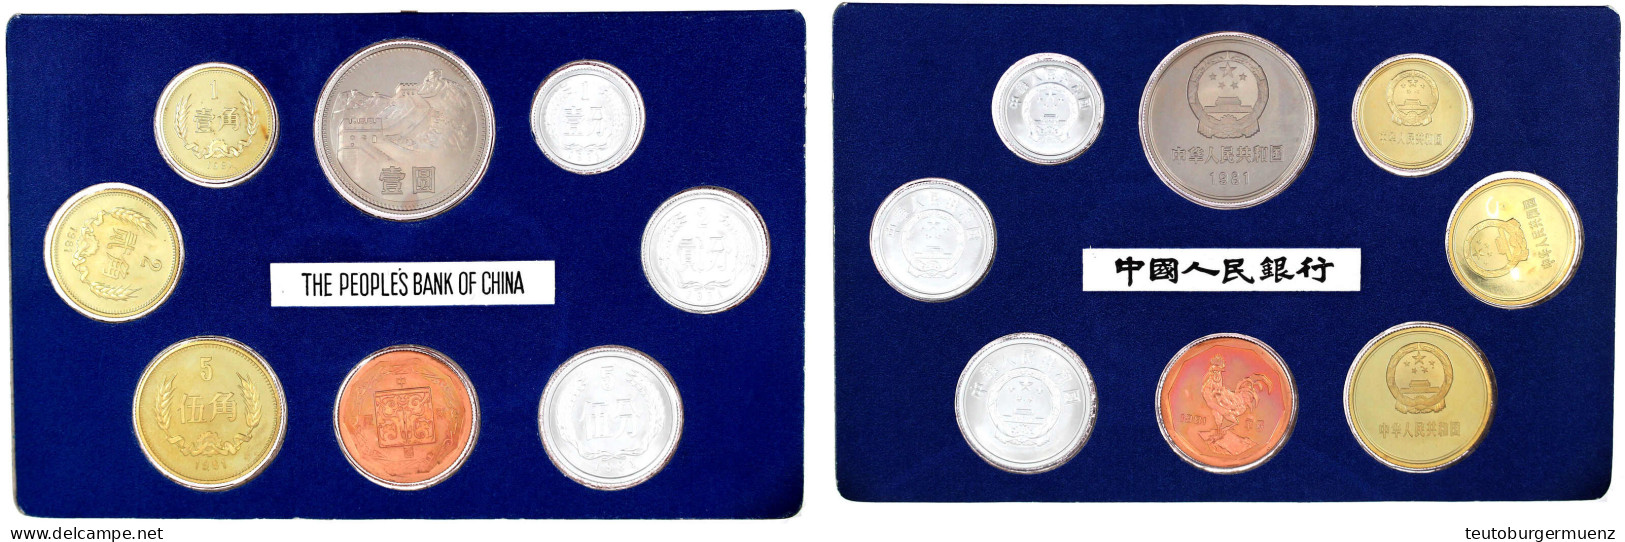 Kursmünzensatz 1981 Mit 7 Münzen Und Zusätzlich Medaille 'Hahn'. Original Im Blauen Pappblister, Ohne Umverpackung! Papp - China